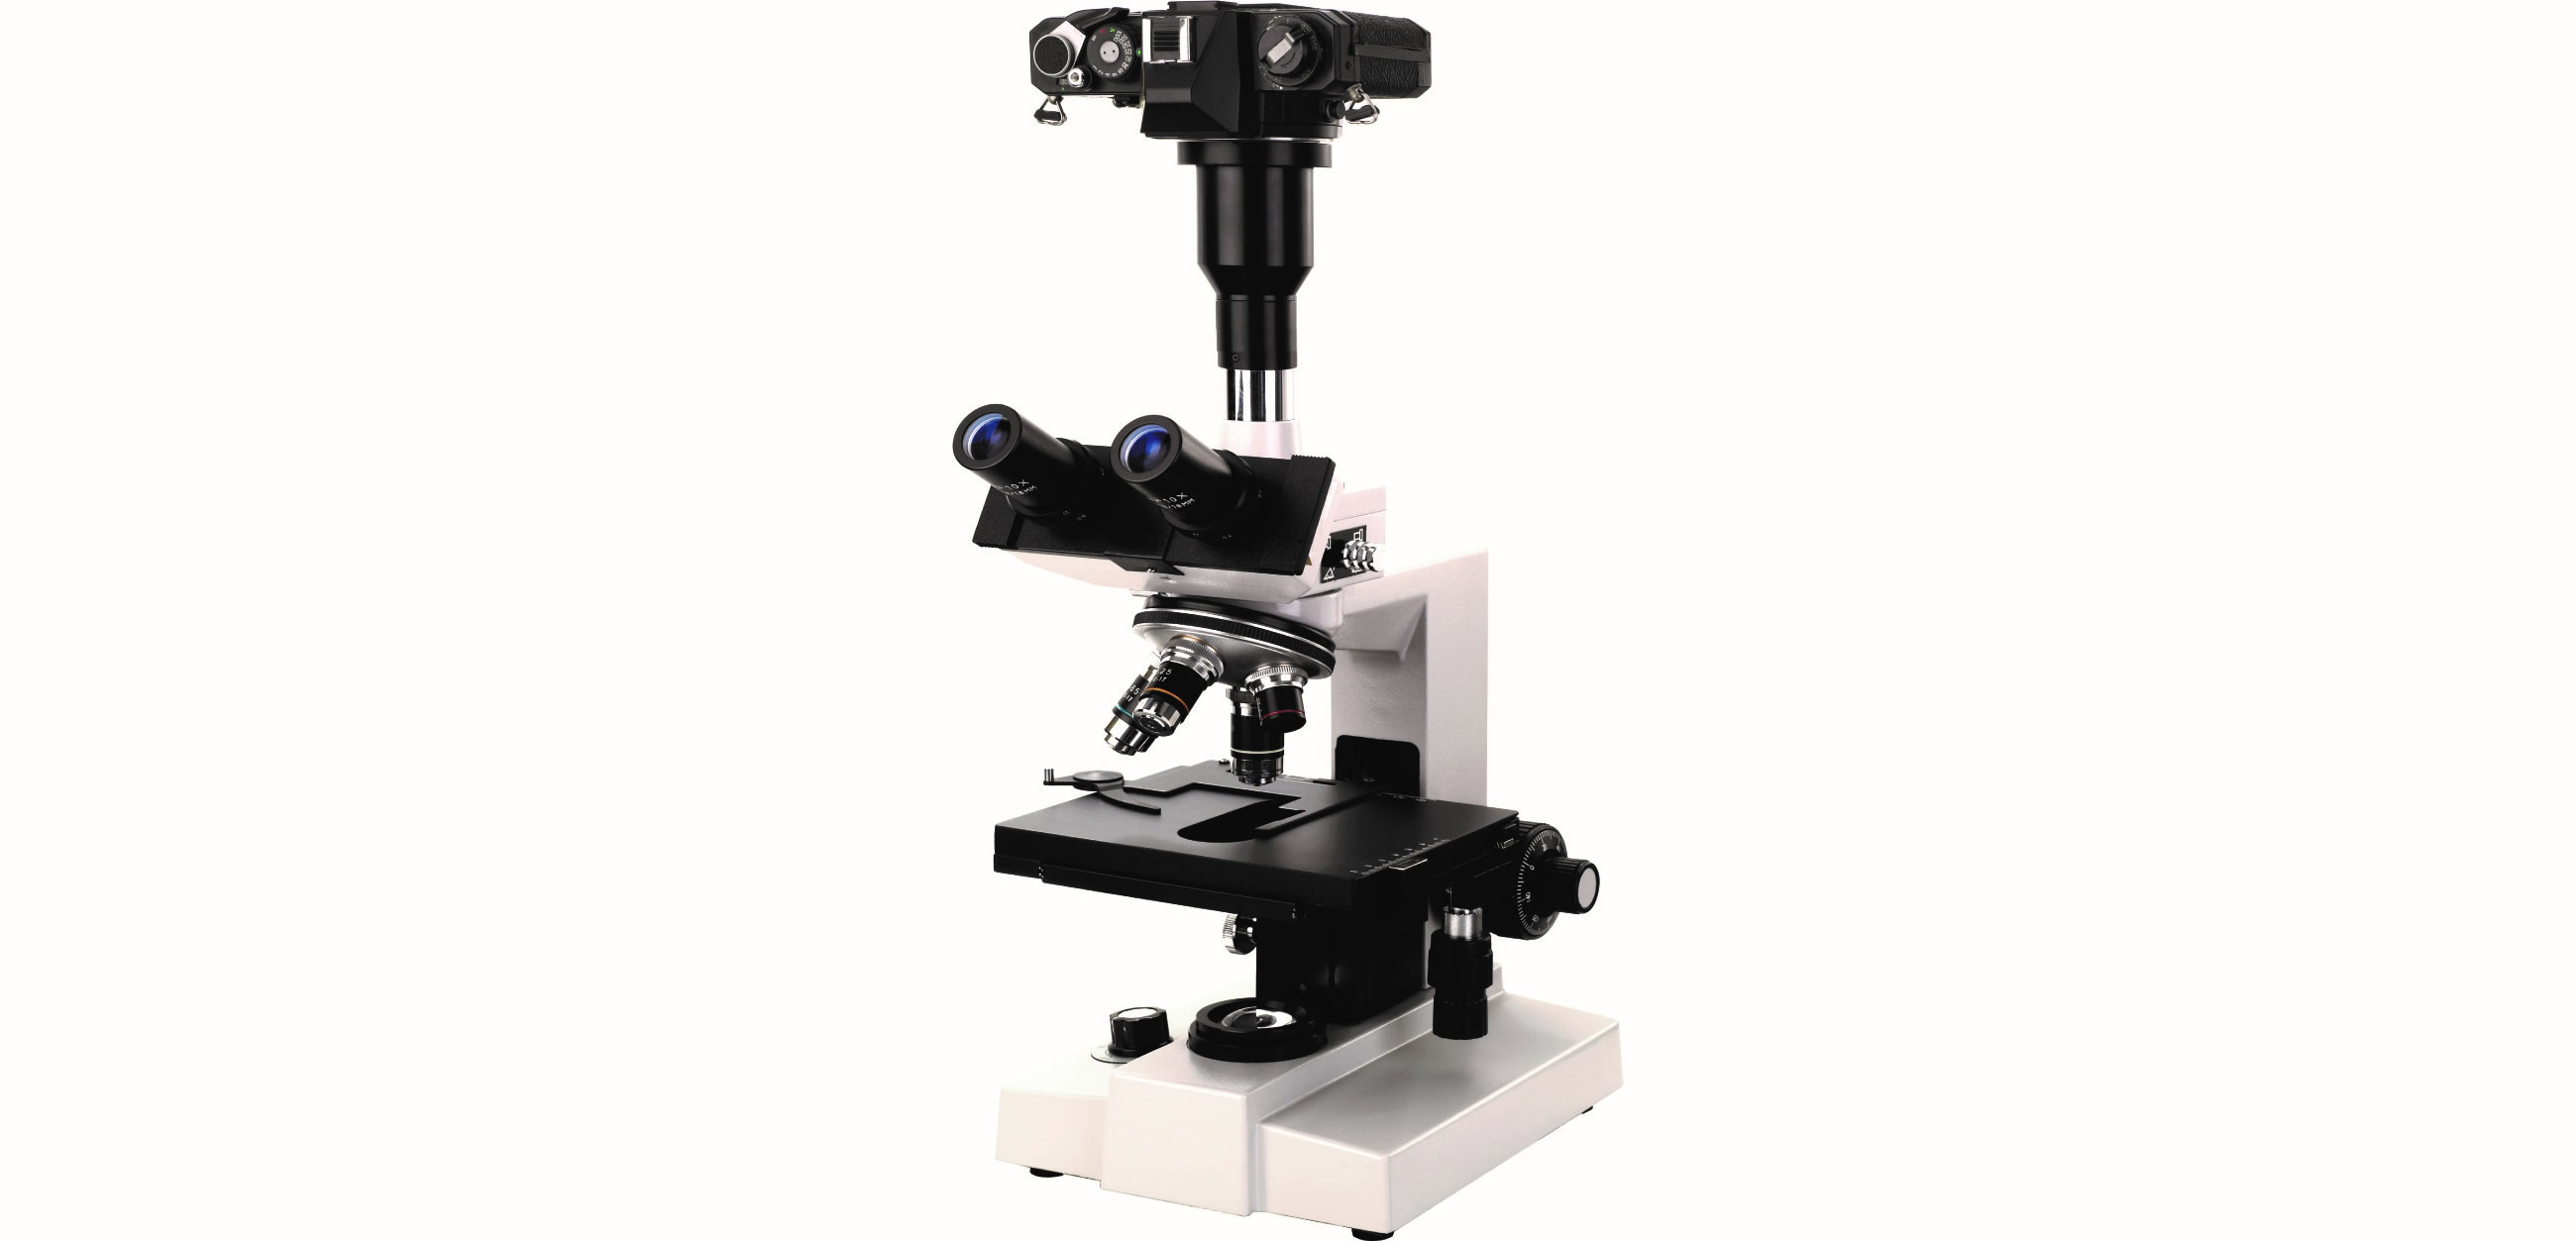 XBL-10A/10B型双目/三目生物显微镜